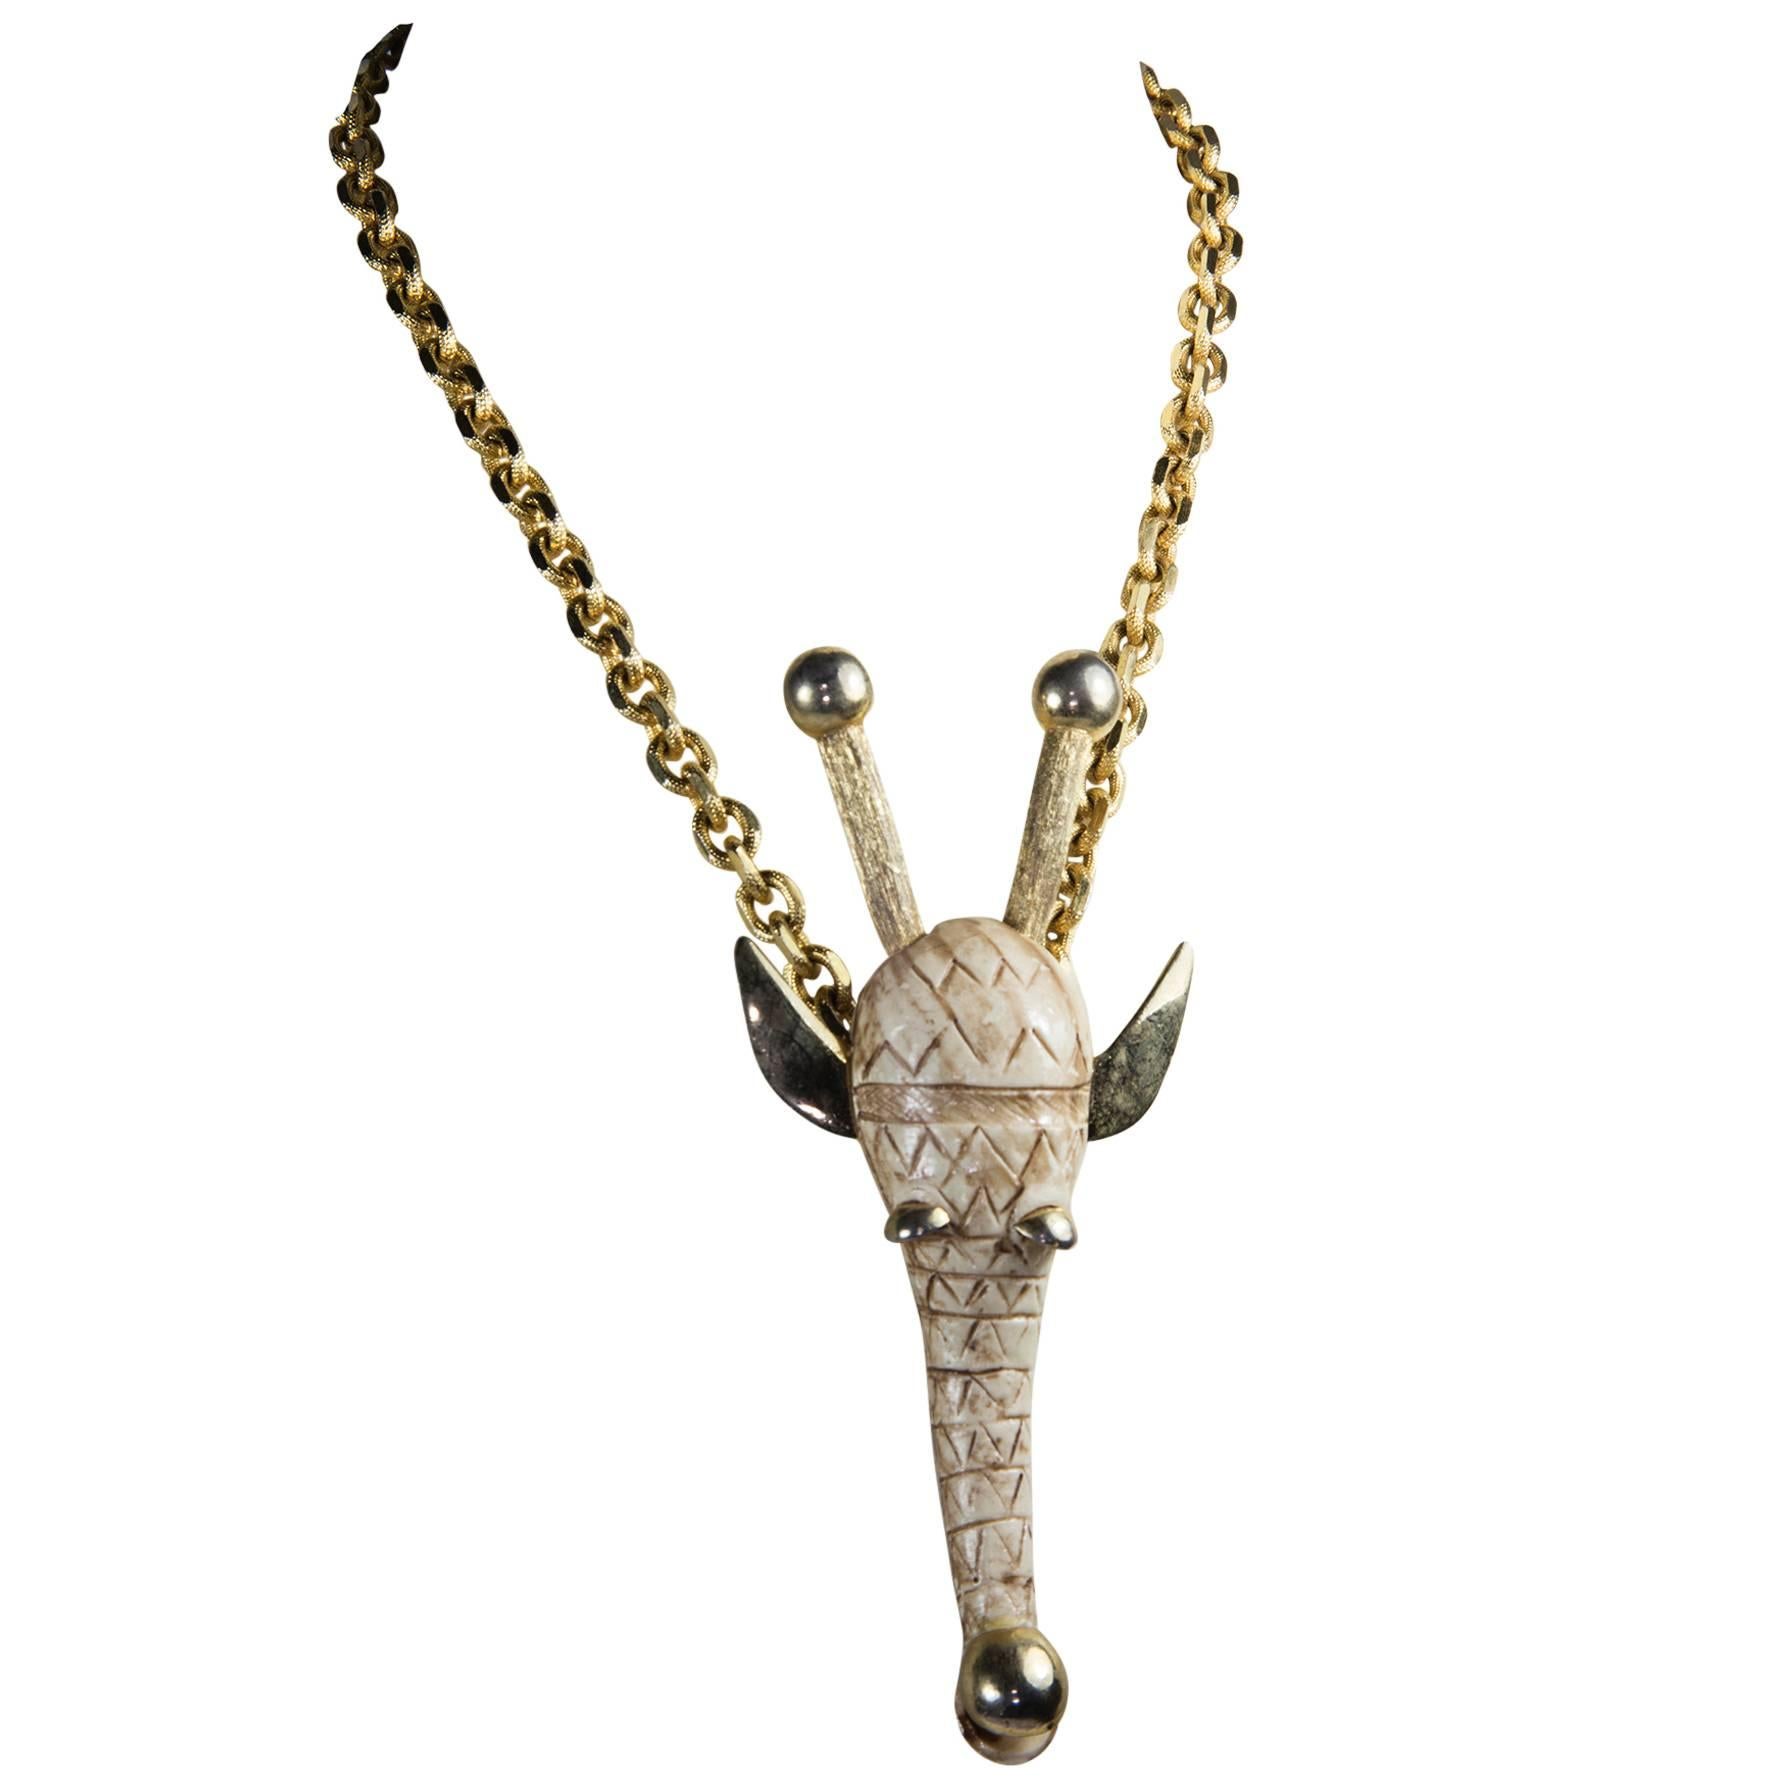 Razza Figural Animal Pendant Necklace in the Zodiac sign of the Giraffe C1970s